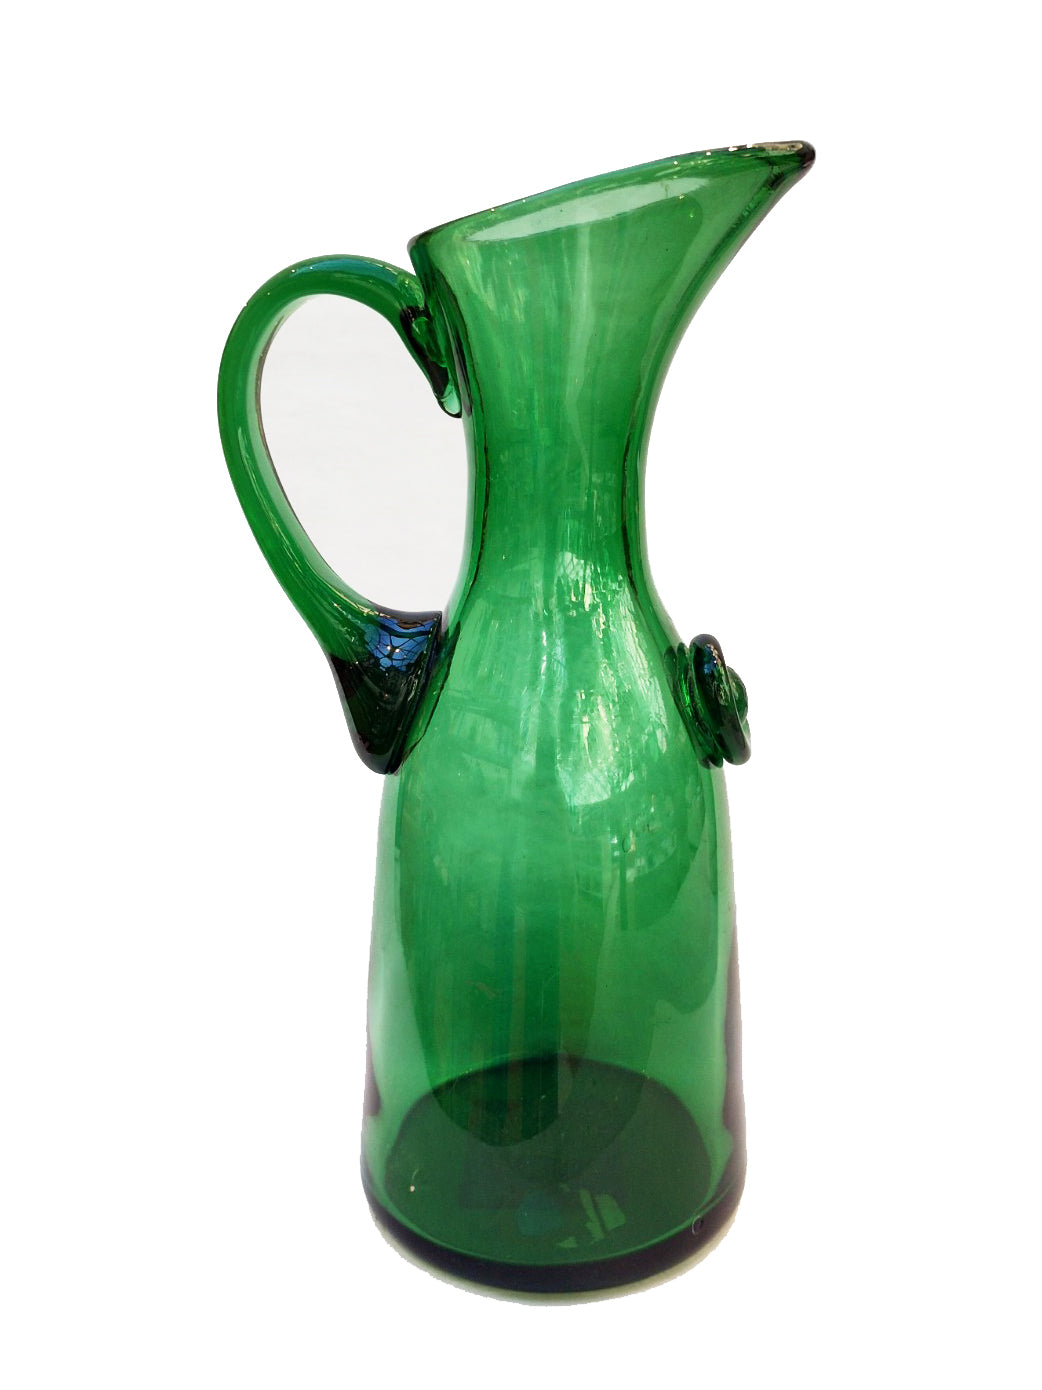 Vintage glass jug, green